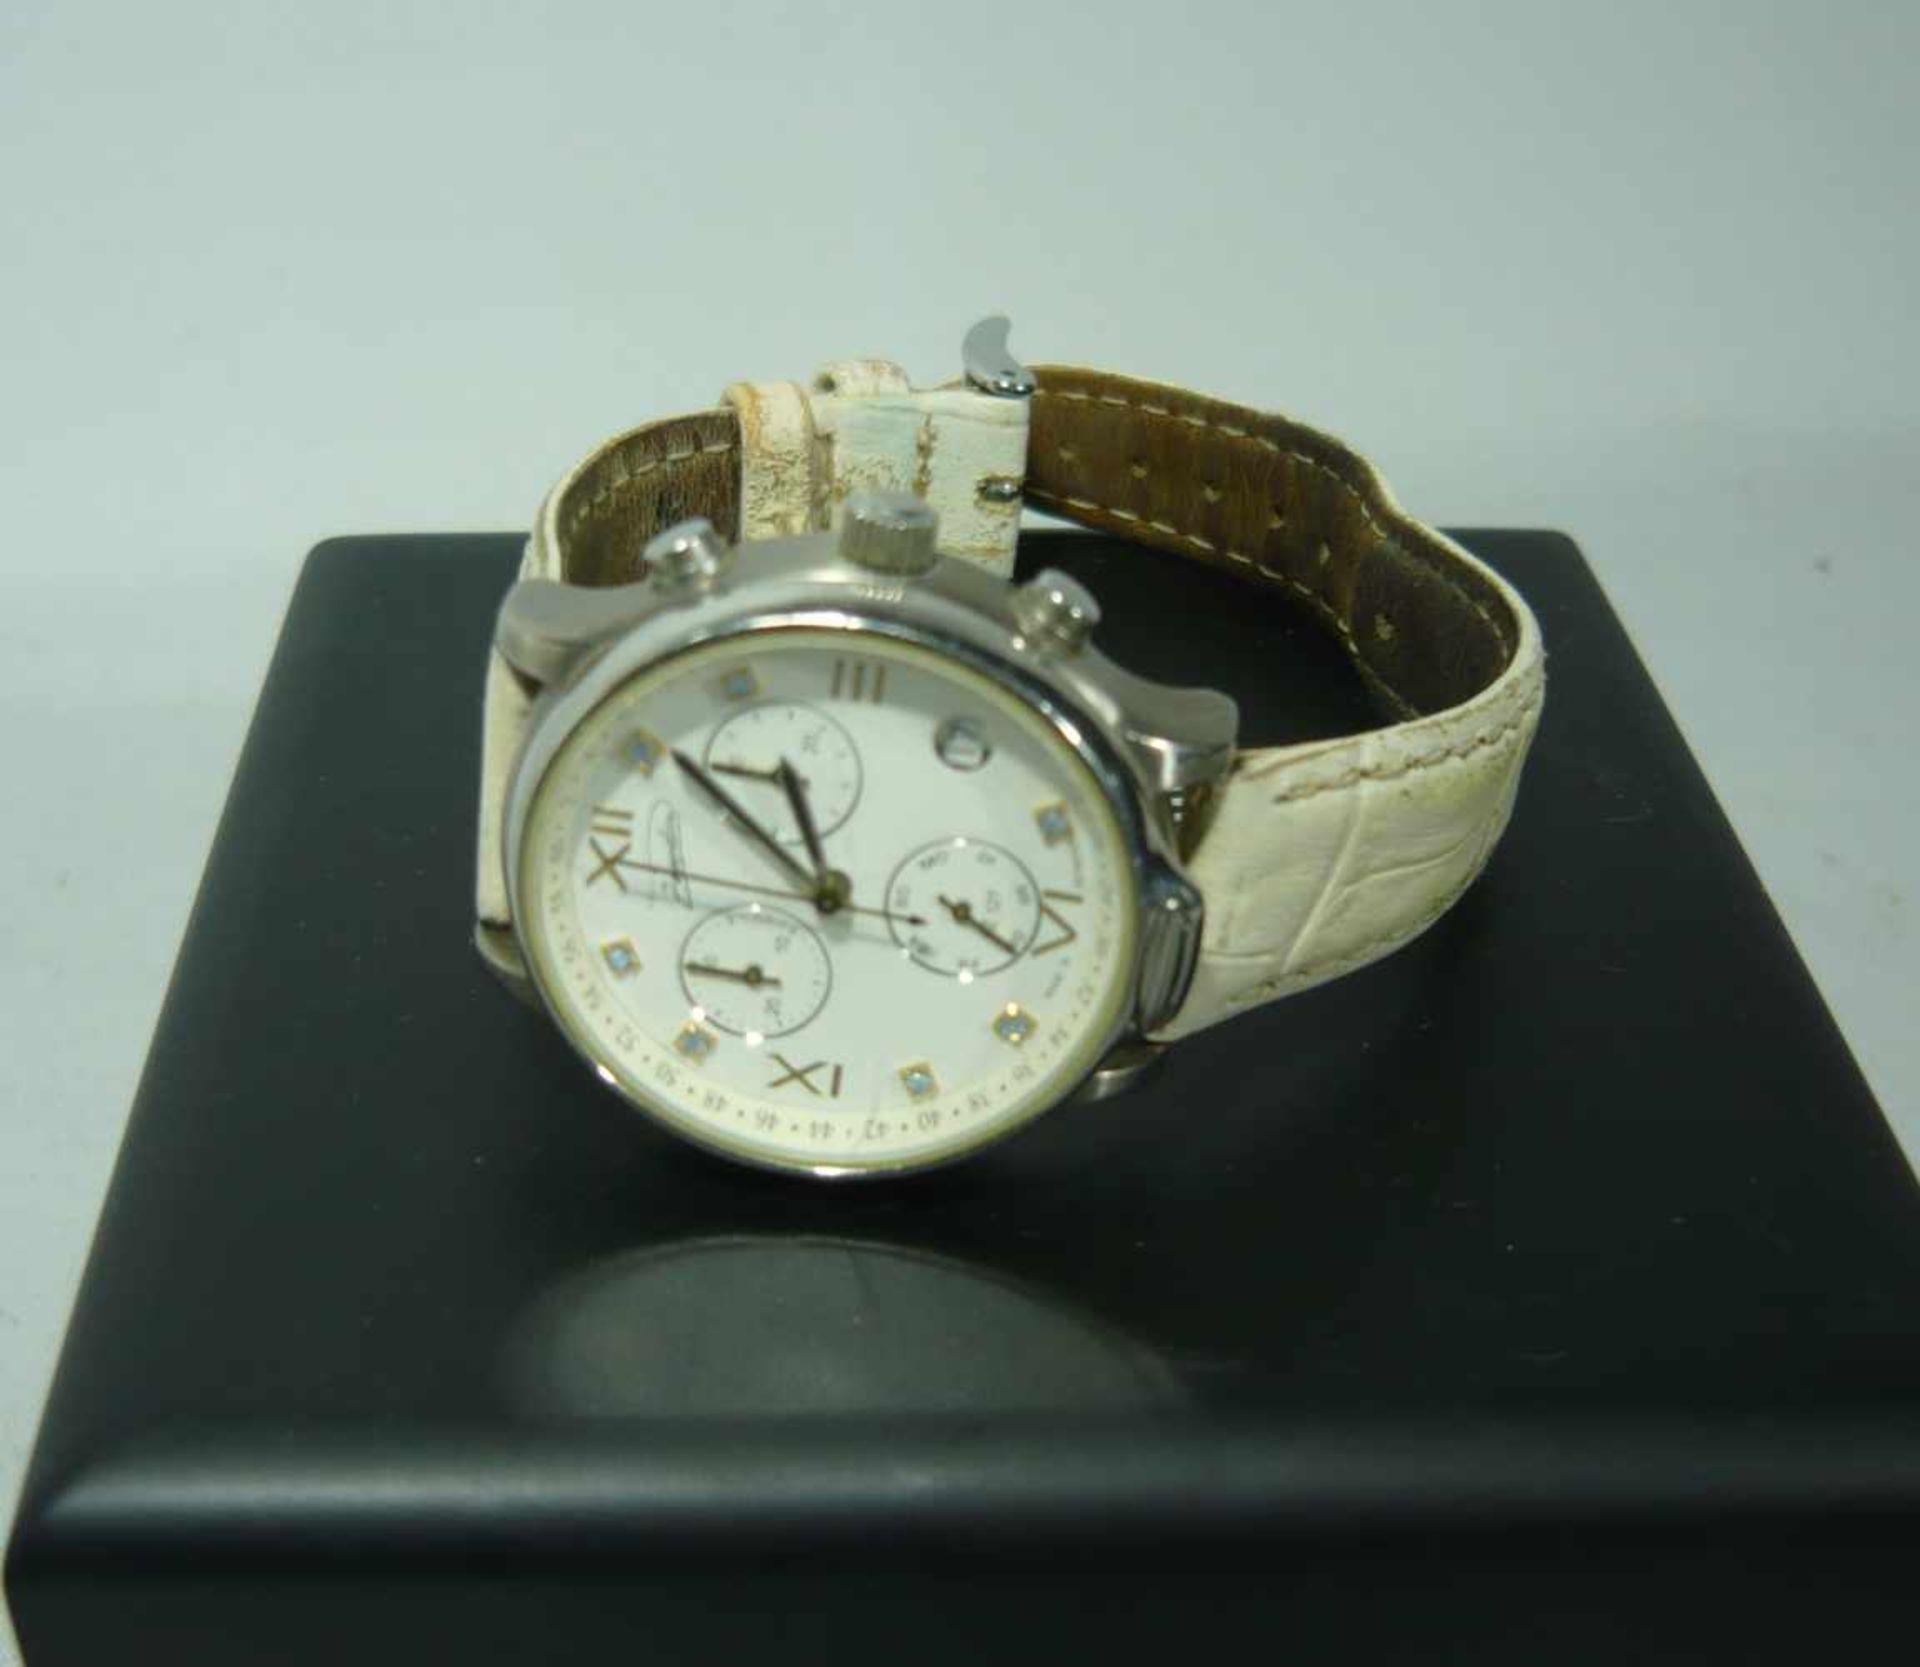 Zeppelin Uhr, bzw. analoger Chronograph. ISA Schweizer Uhrwerk. Gehäuse ohne Krone ca. 32 cm. Uhr